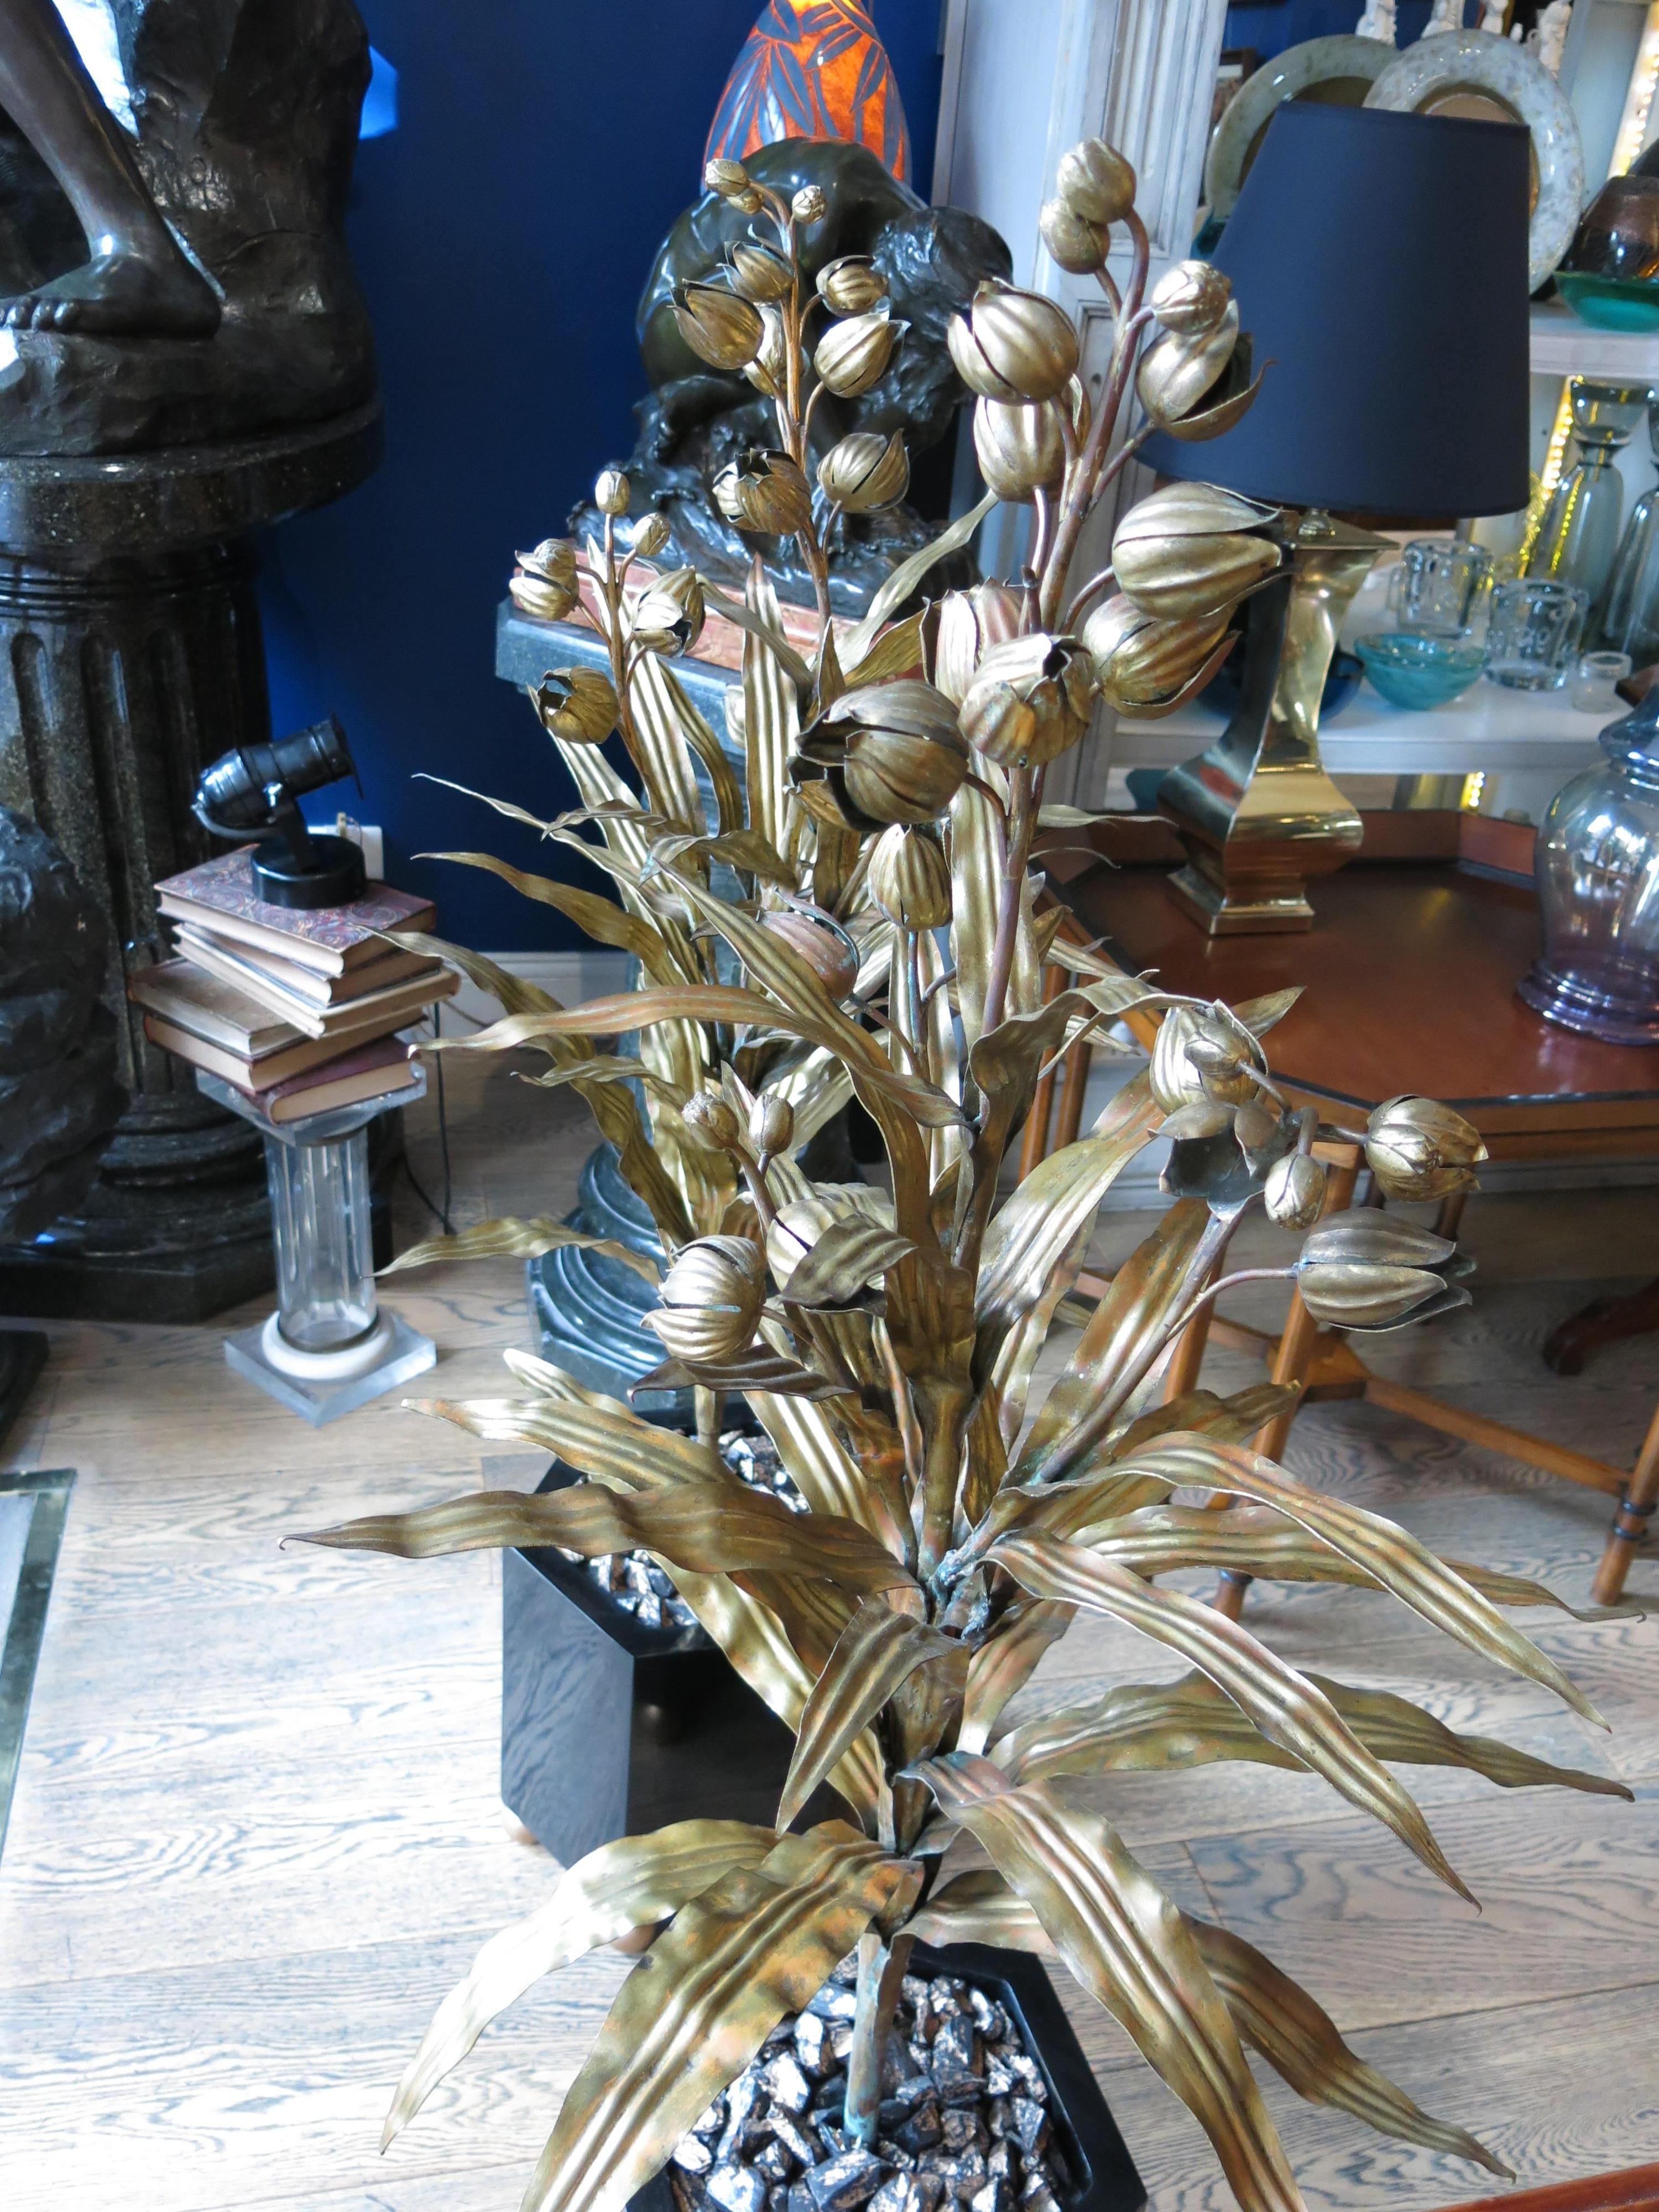 Wir präsentieren ein atemberaubendes Pflanzenpaar von Maison Jansen, das den Glamour und die Raffinesse der Hollywood Regency-Ära verkörpert. Mit ihren lackierten sechseckigen schwarzen Sockeln, die eine schöne Alterspatina aufweisen, strahlen diese